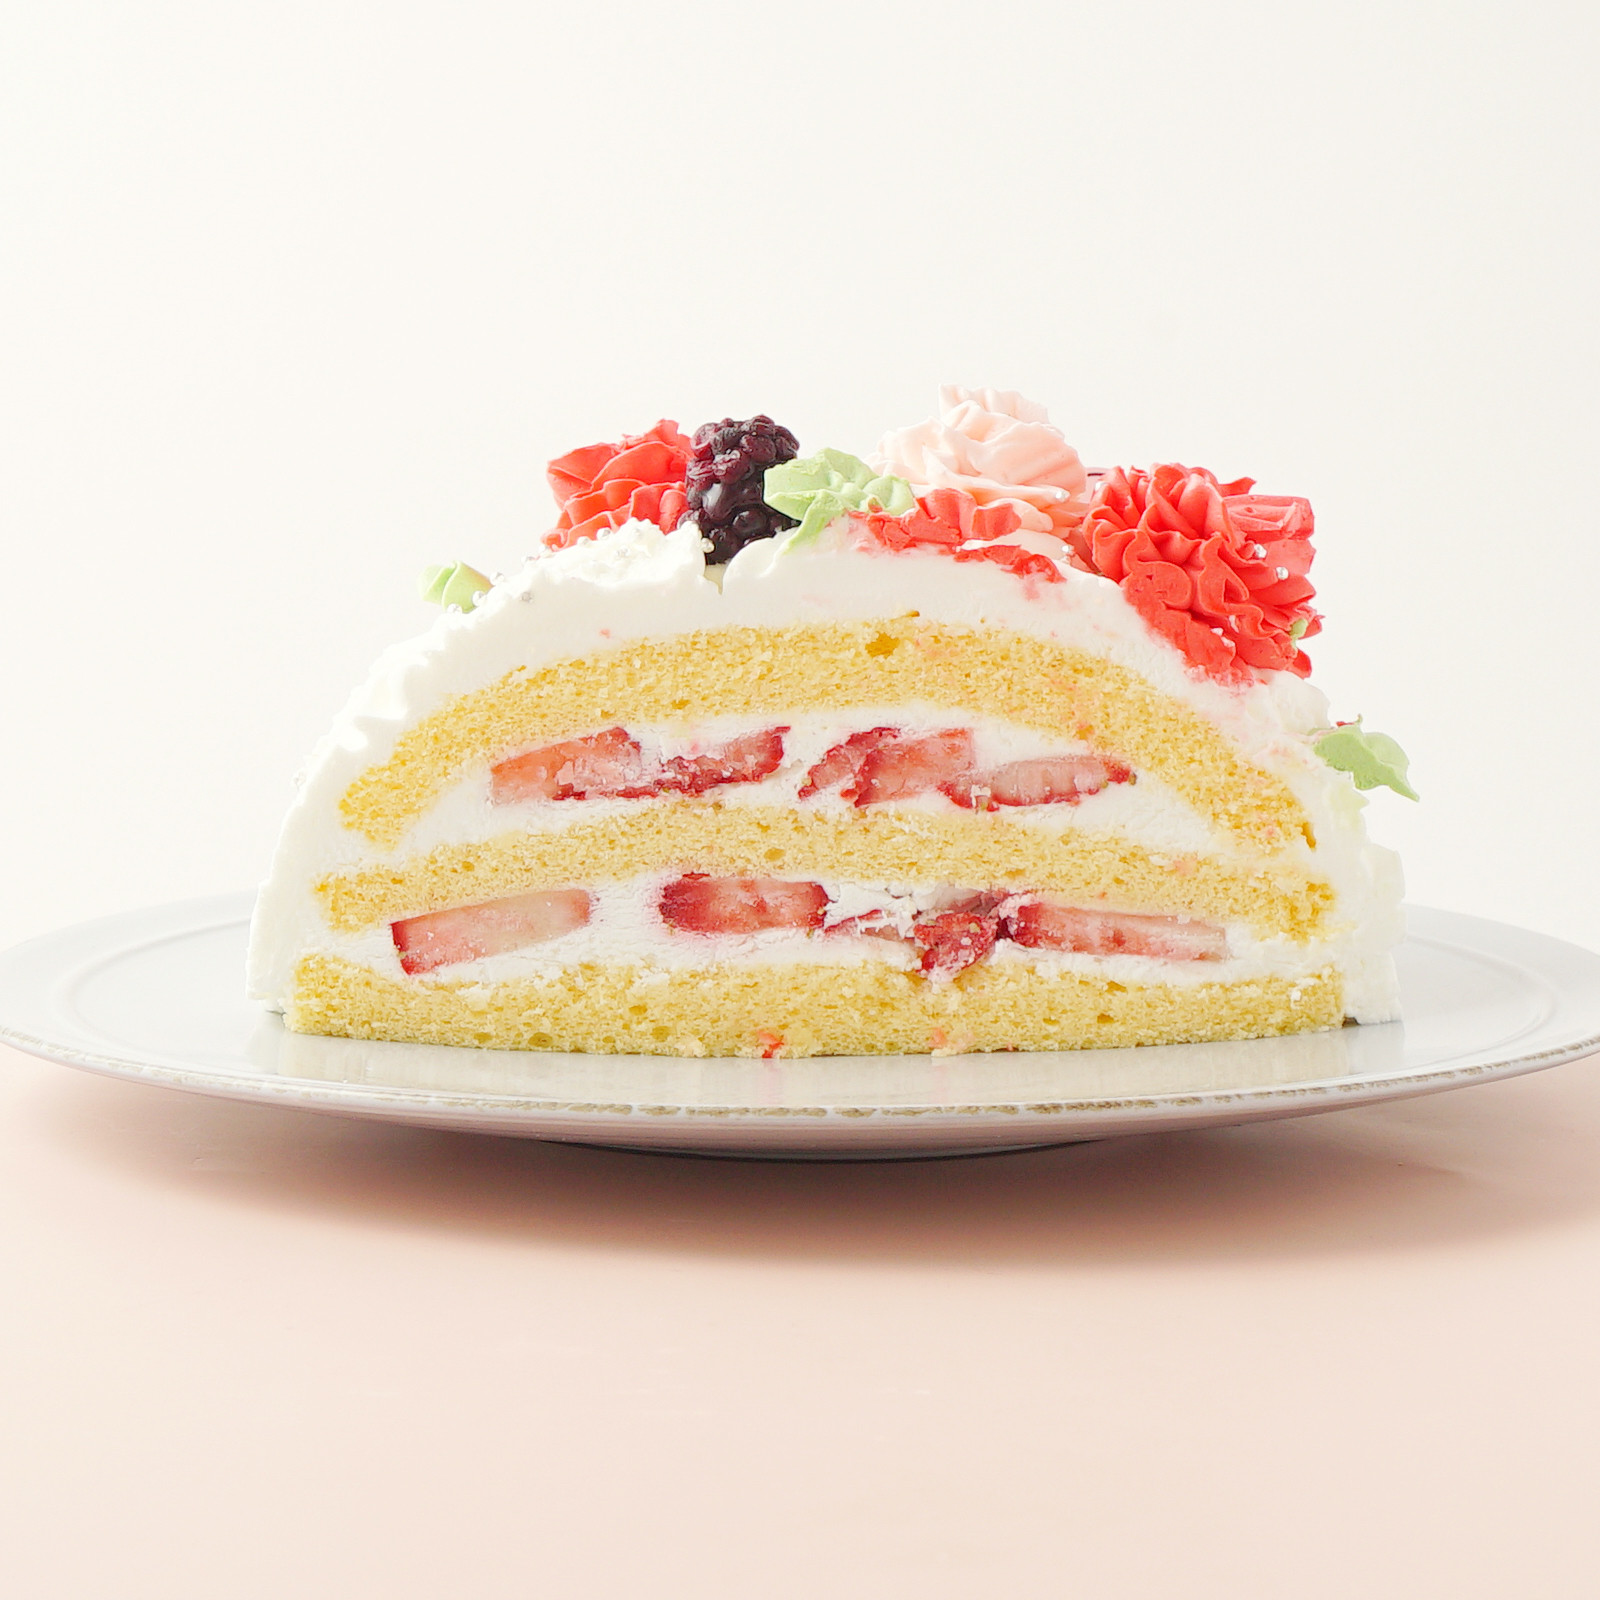 【都内の人気店・パティスリーラヴィアンレーヴ】母の日 カーネーションショートケーキ 4号 《Cake.jp限定》 5